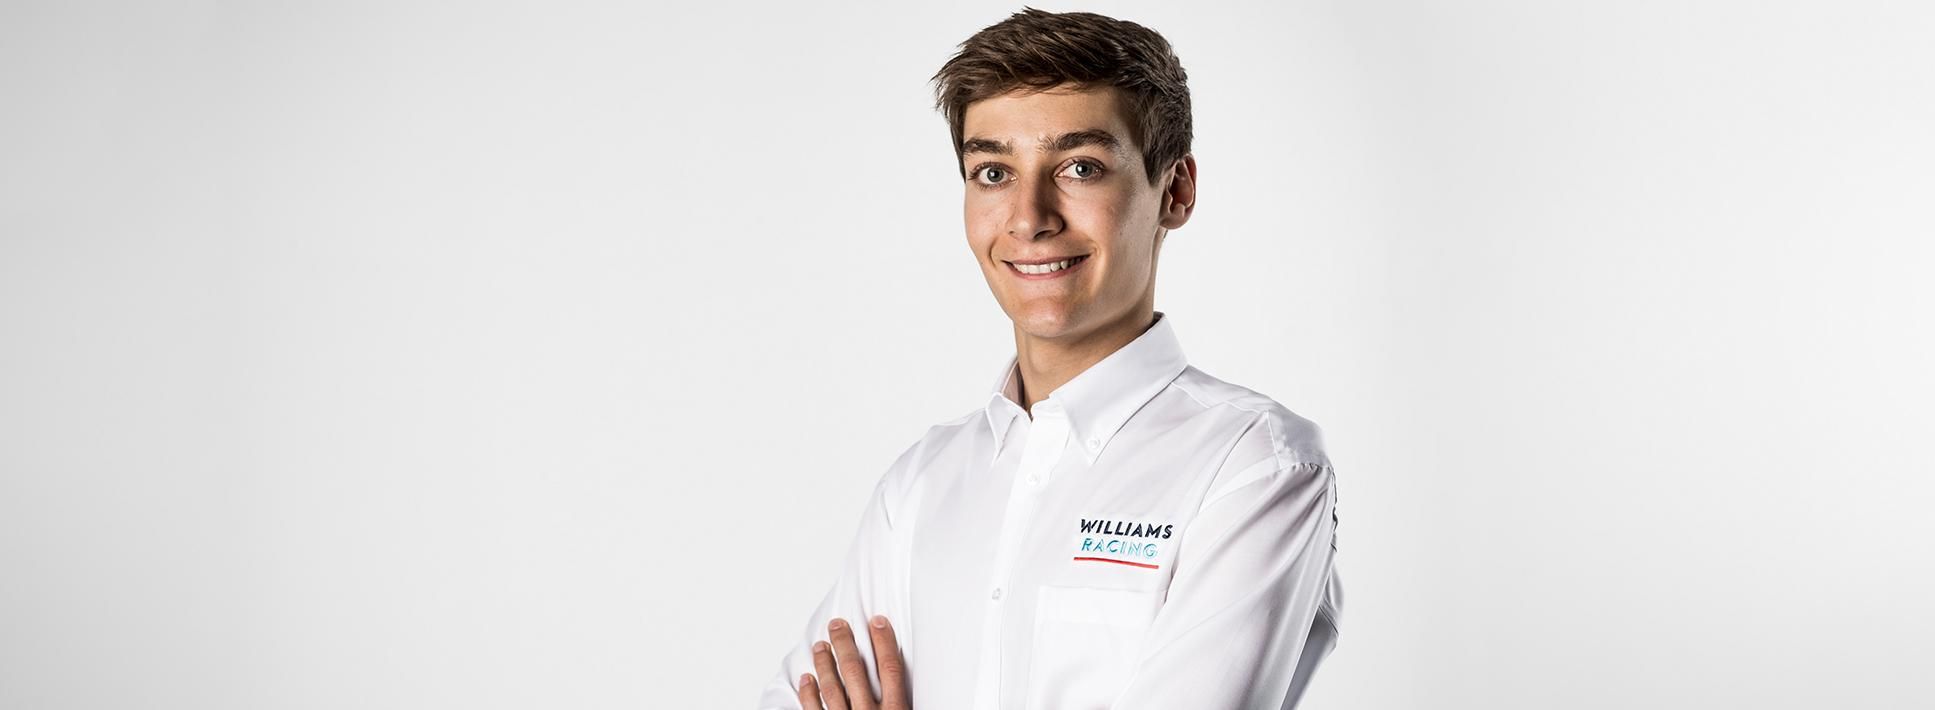 За Williams у Формулі-1 в 2019 році виступатиме юний новачок